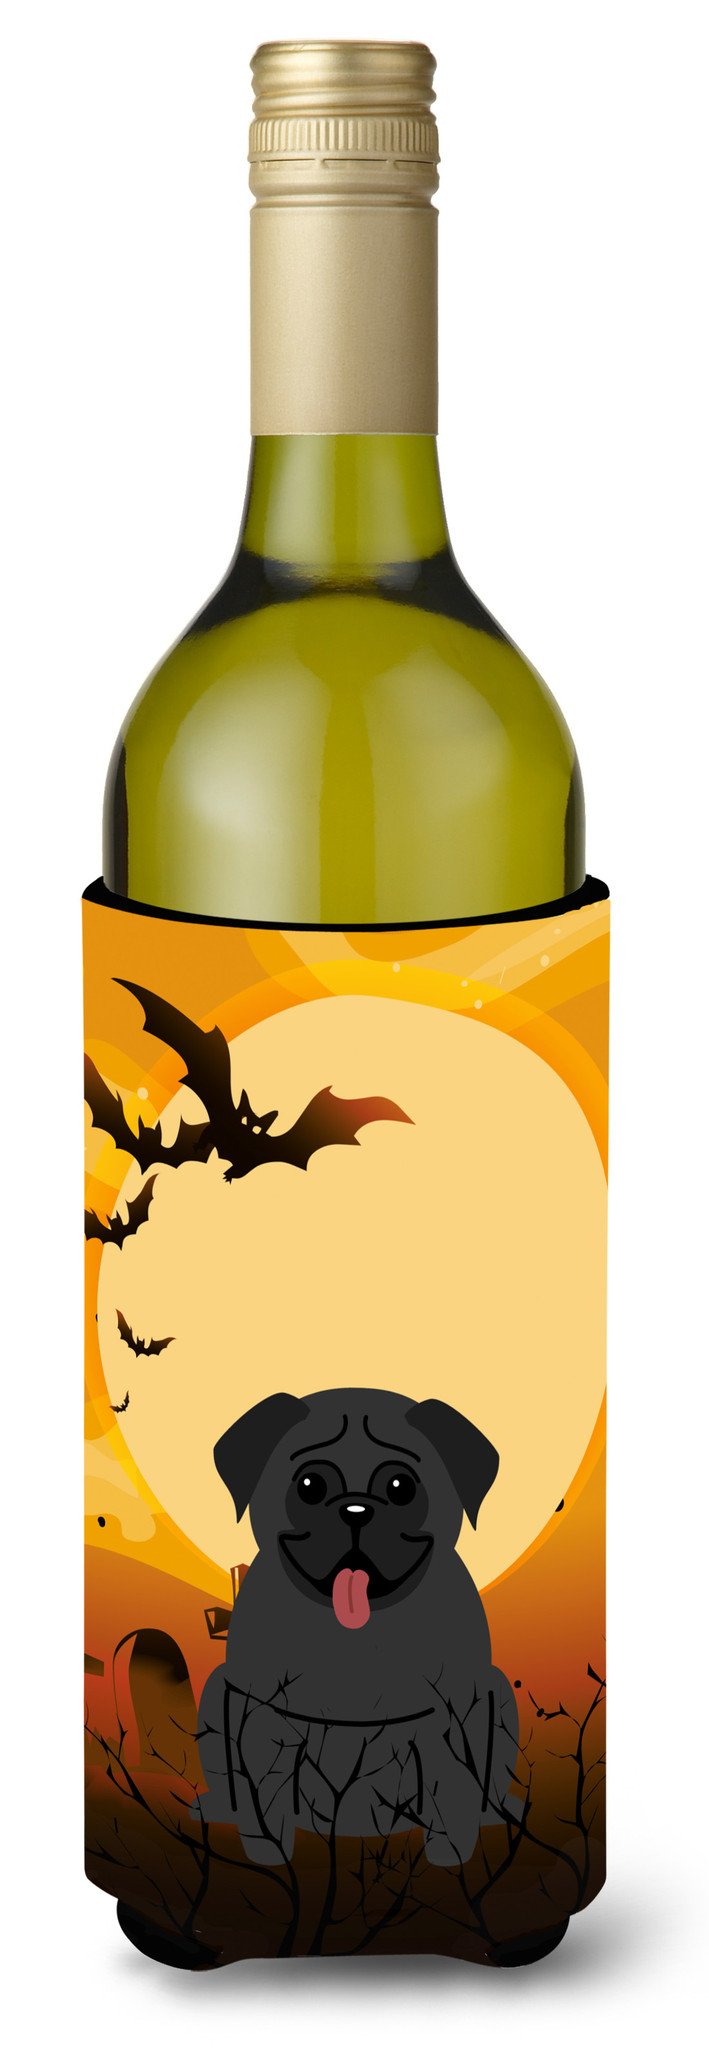 Halloween Pug Black Wine Bottle Beverge Insulator Hugger BB4272LITERK by Caroline's Treasures